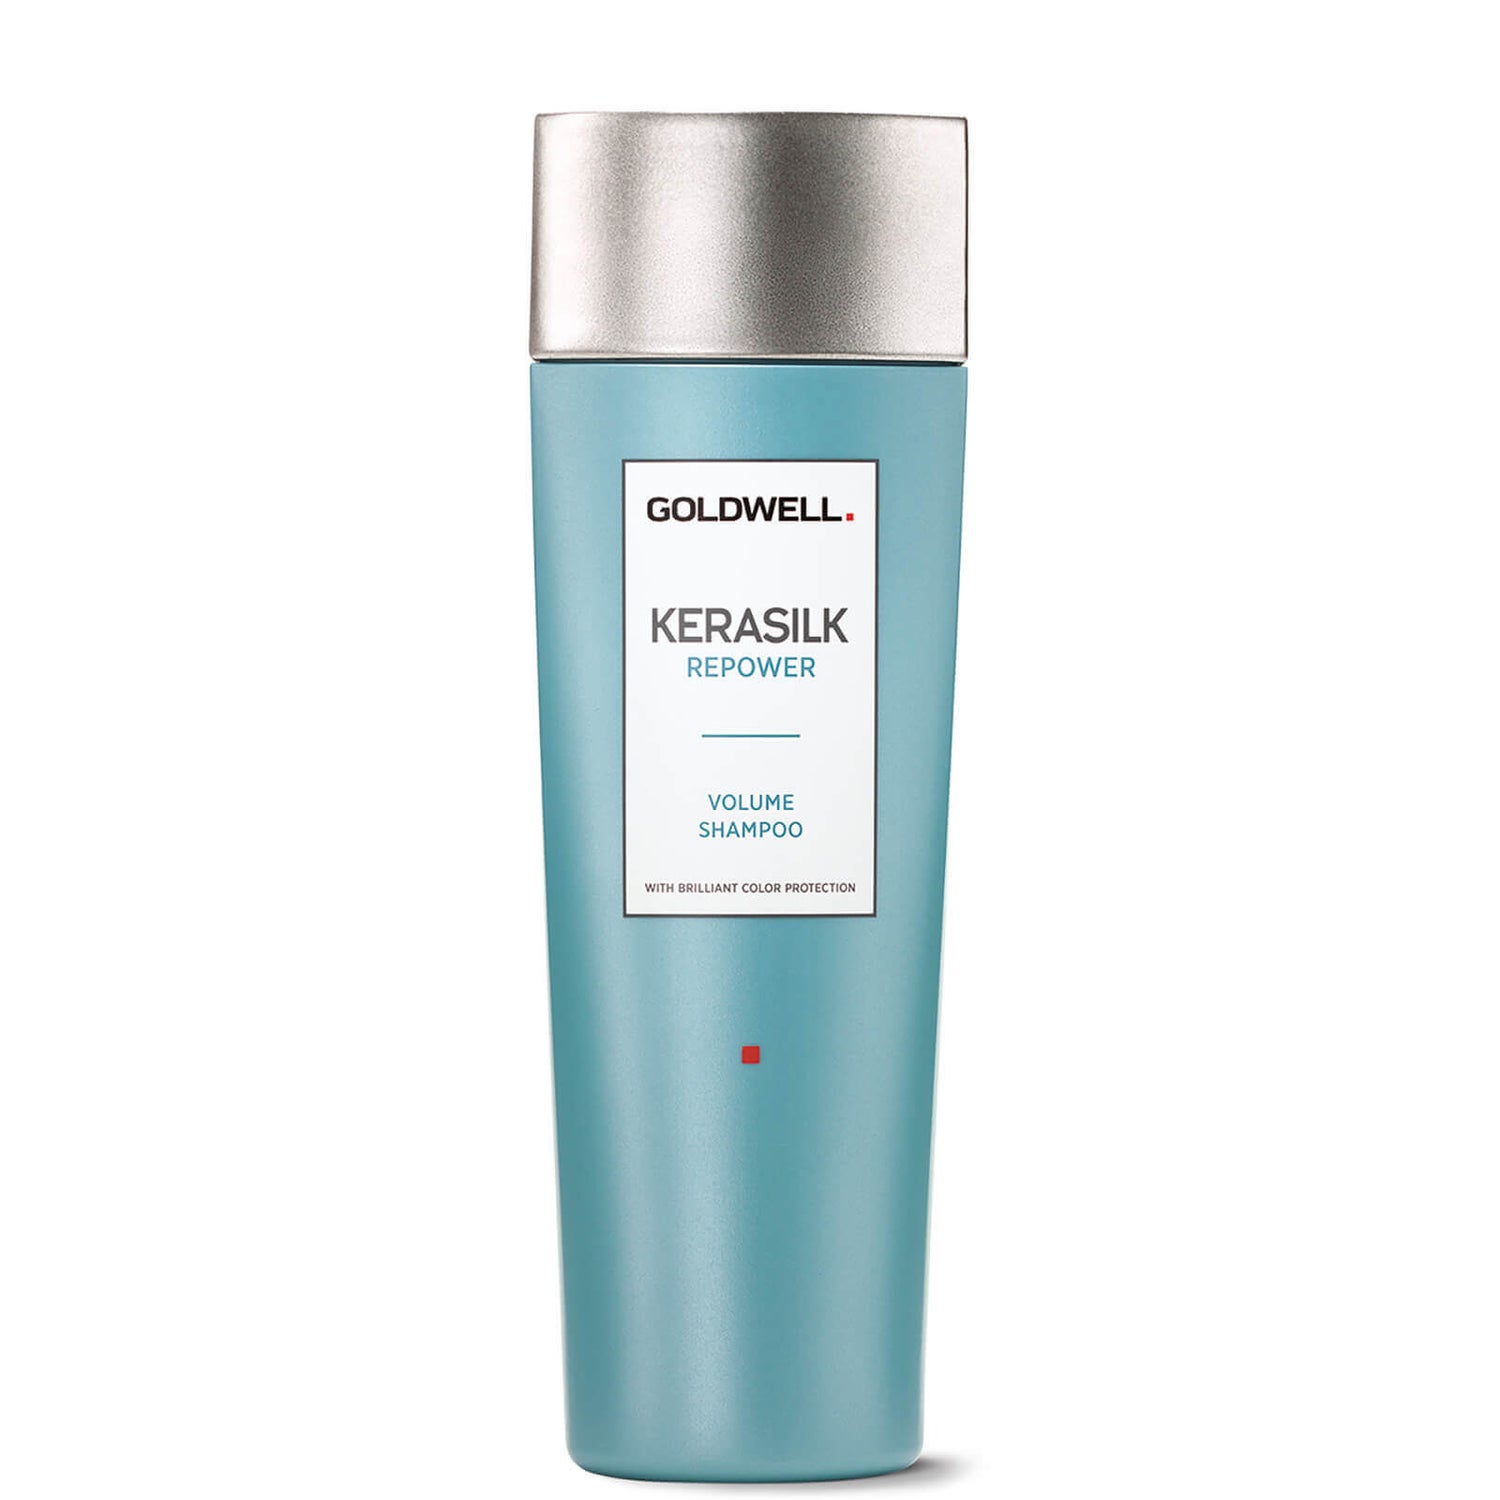 Goldwell Kerasilk Re-power Volume Shampoo szampon do włosów 250 ml